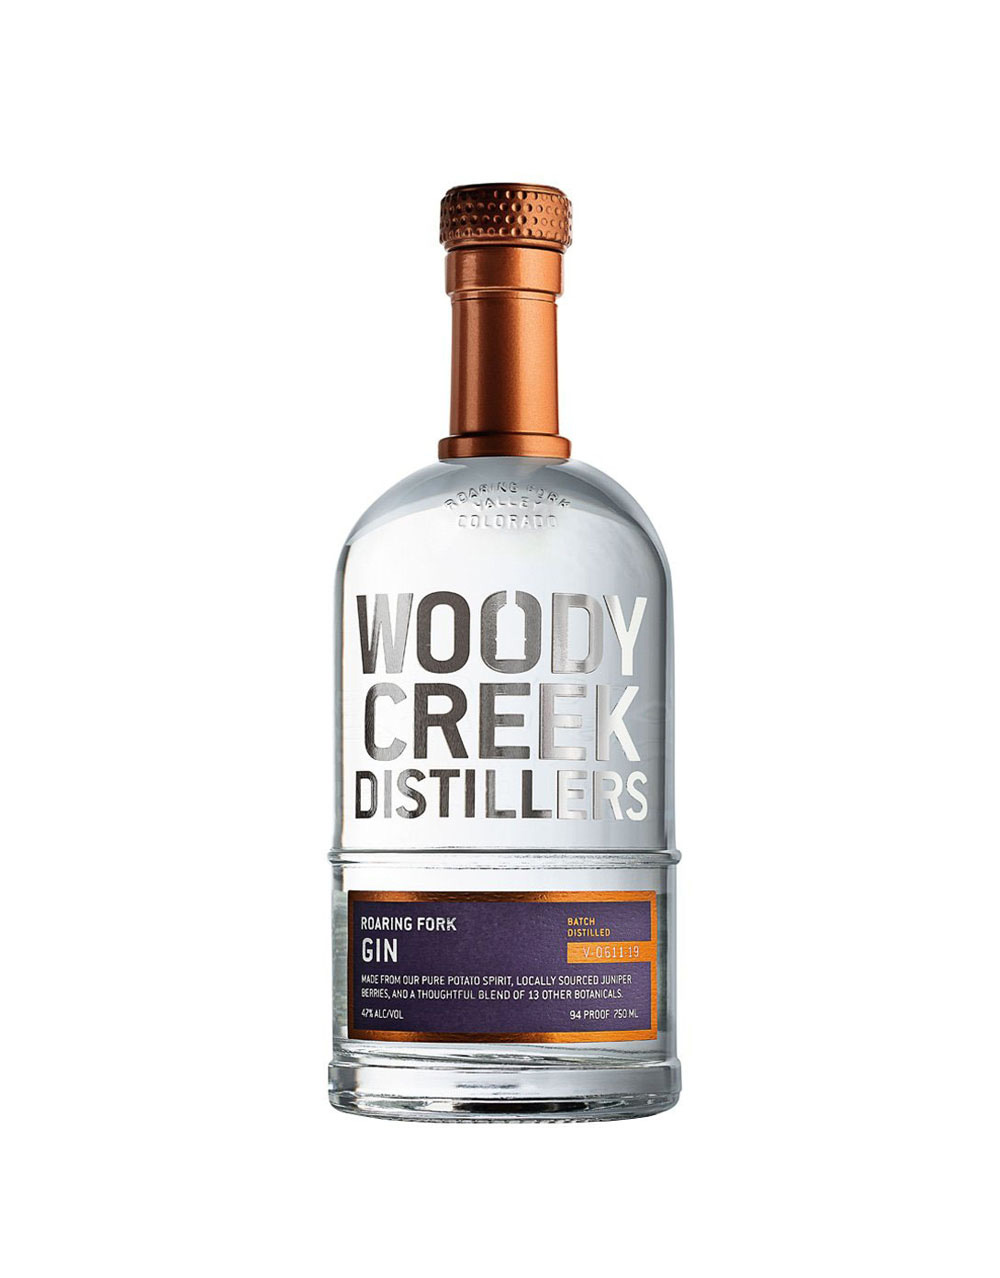 Woody Creek Distillers Gin